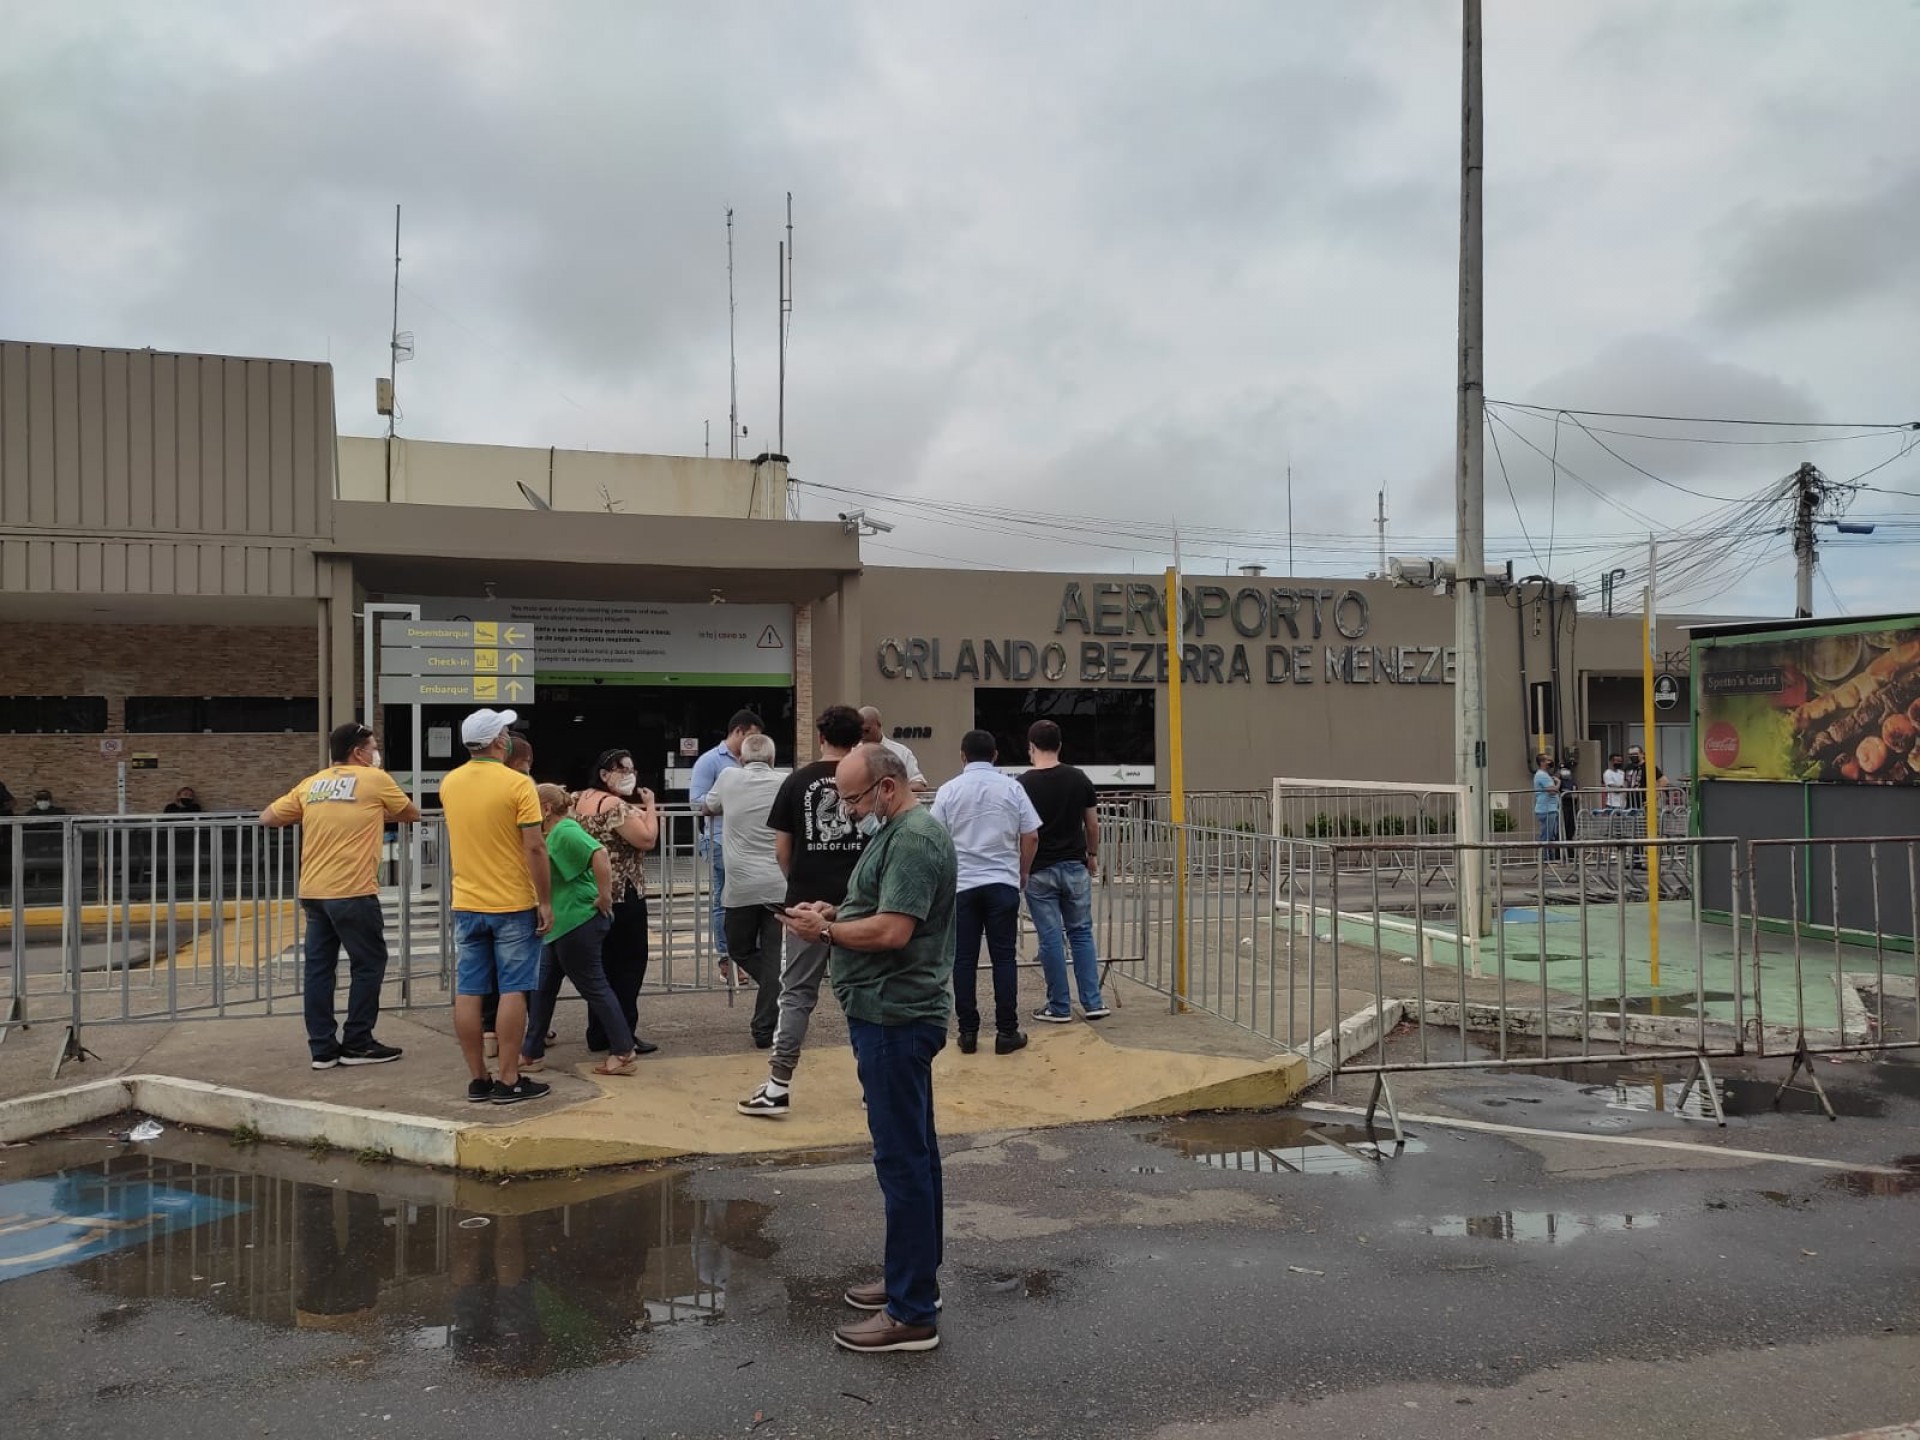 Apoiadores do presidente Bolsonaro aguardavam desembarque do mandatário no aeroporto Orlando Bezerra de Menezes, em Juazeiro do Norte, na manhã desta terça-feira, 8 de fevereiro de 2022